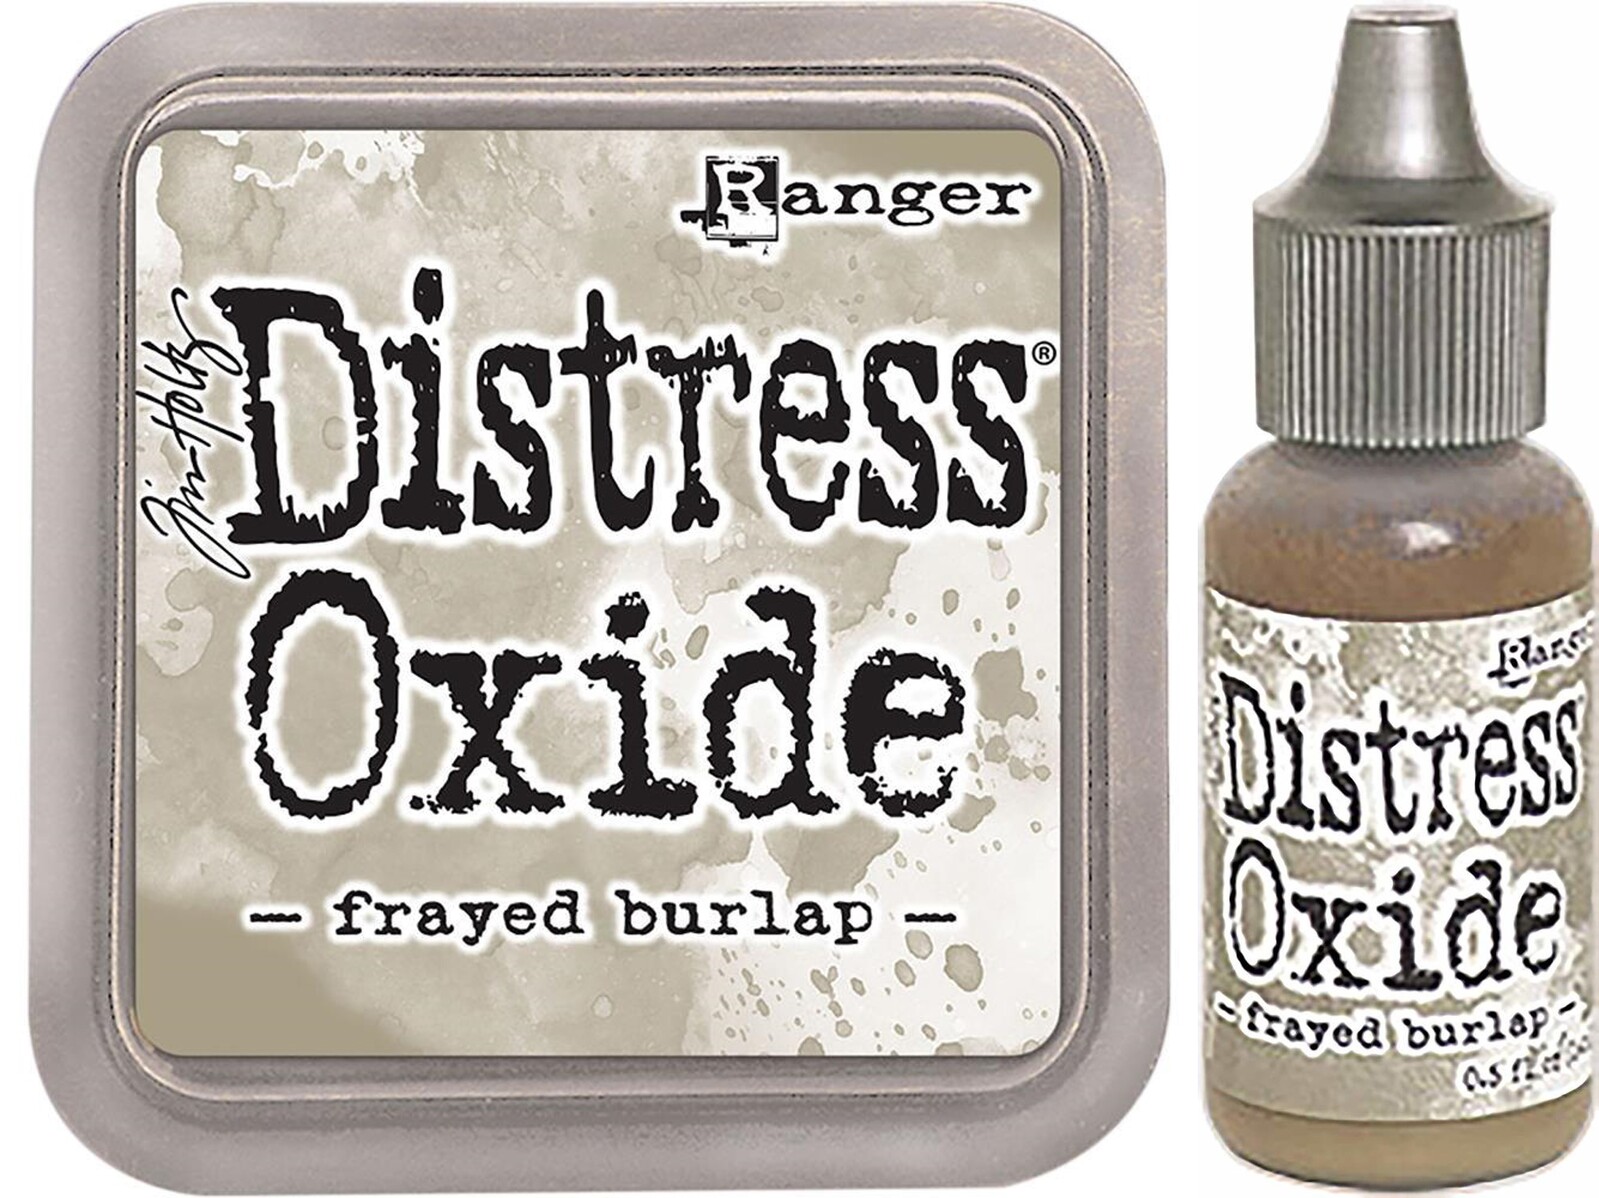 Tim Holtz Distress Oxide Ink Pad + Reinker Frayed Burlap